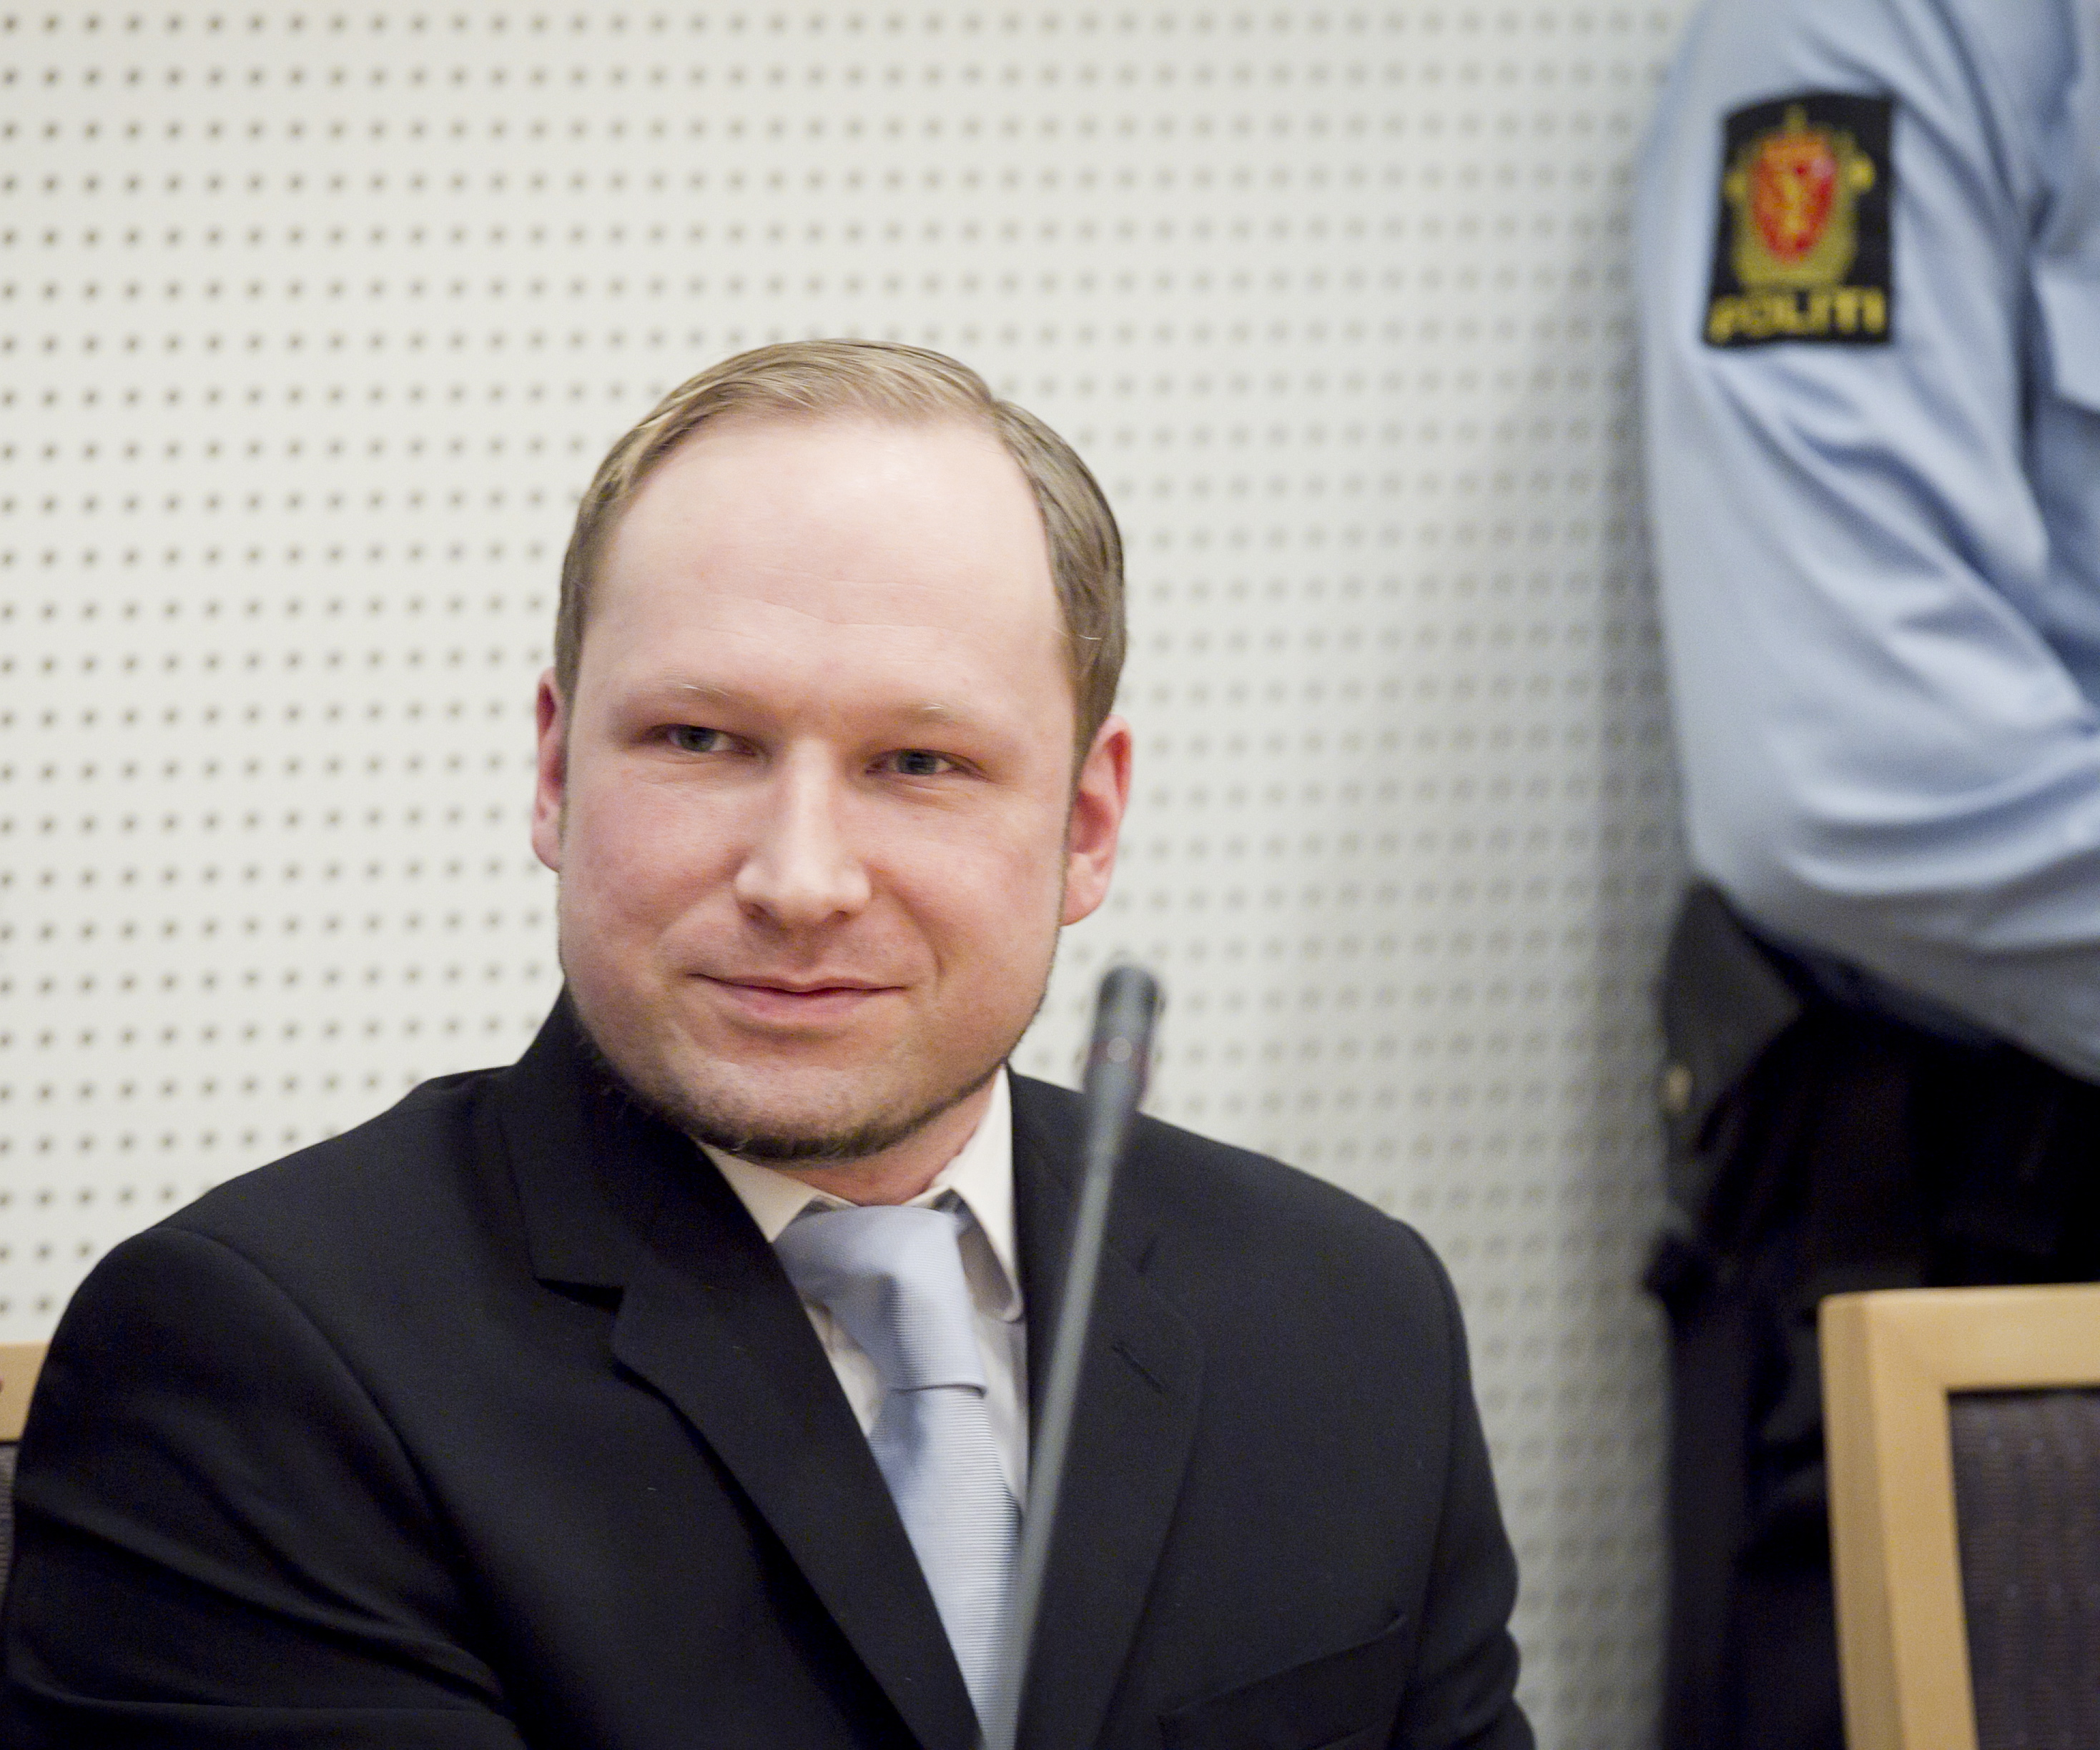 Norge, Oslo, Bombattentat, Utøya, Anders Behring Breivik, Terrordåd